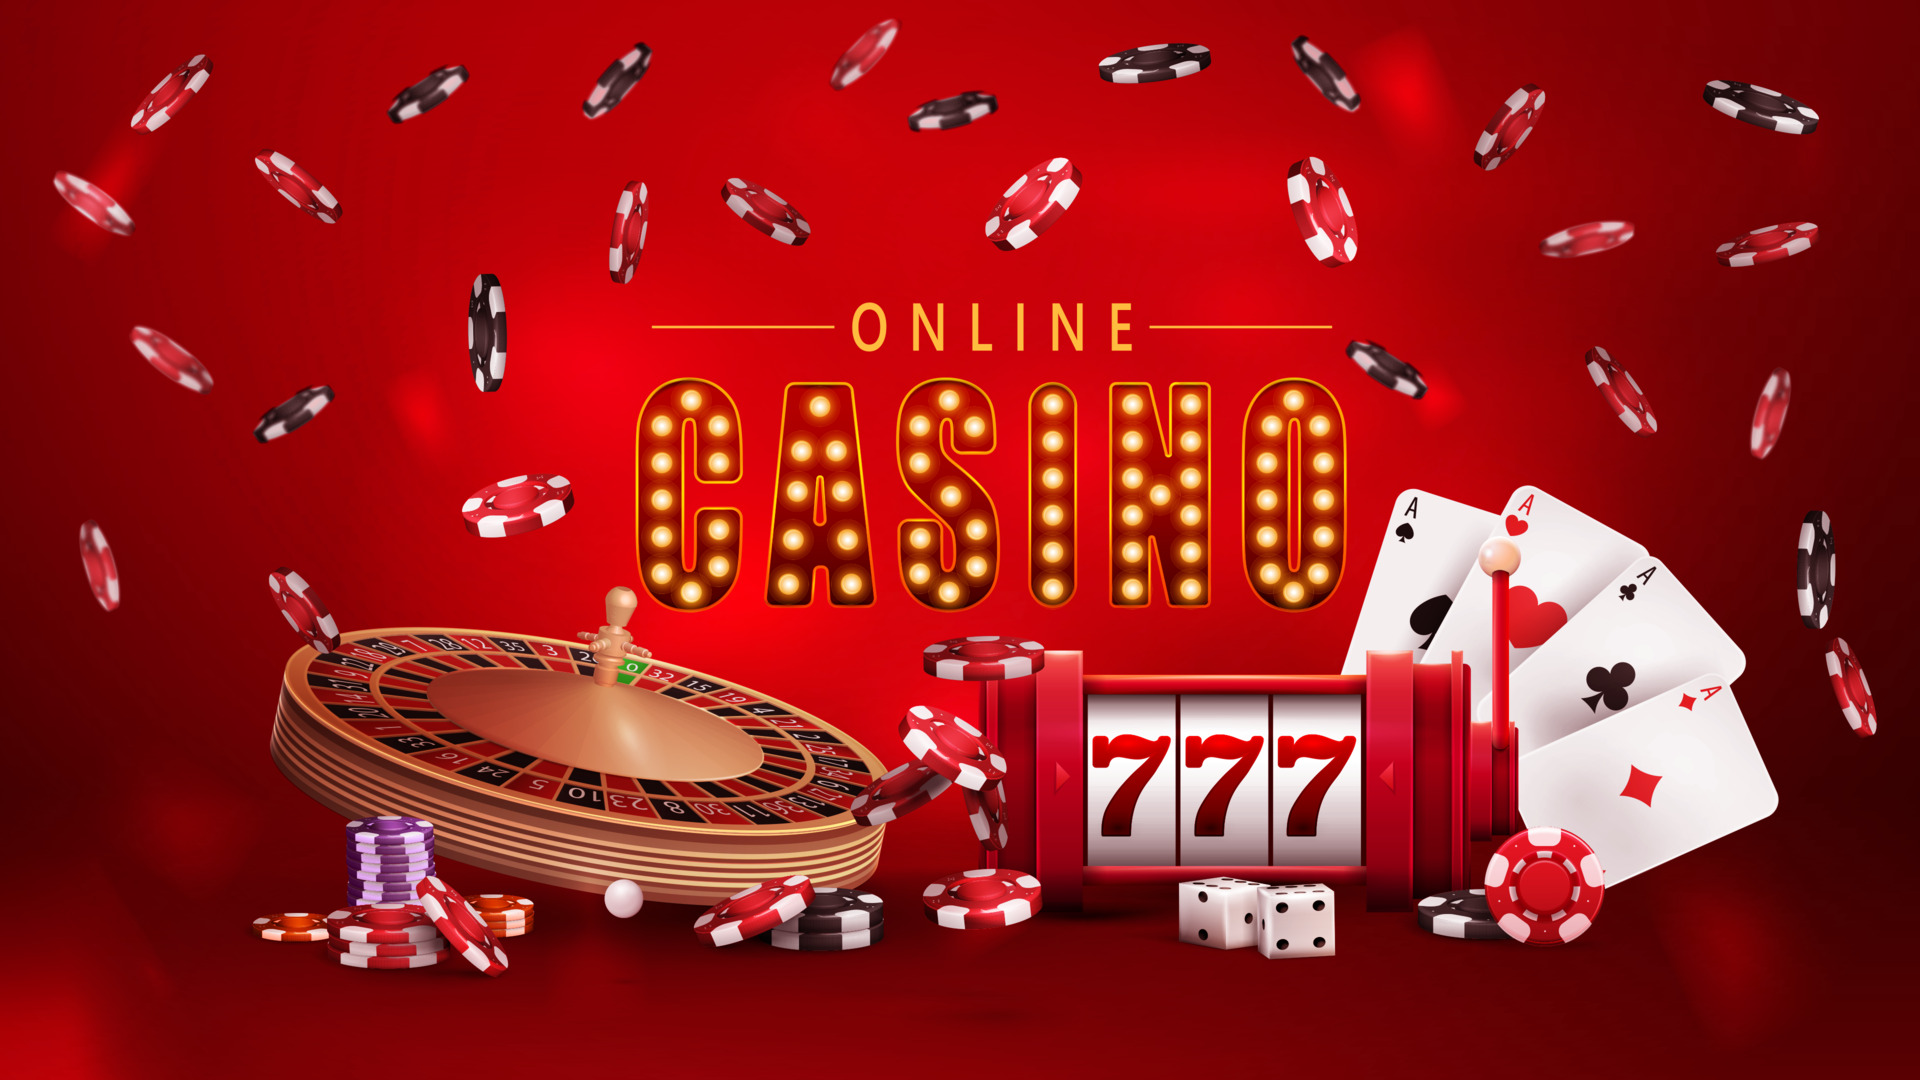 jogo de cassino online com cartas de jogar pôquer e moedas de ouro 2215210  Vetor no Vecteezy